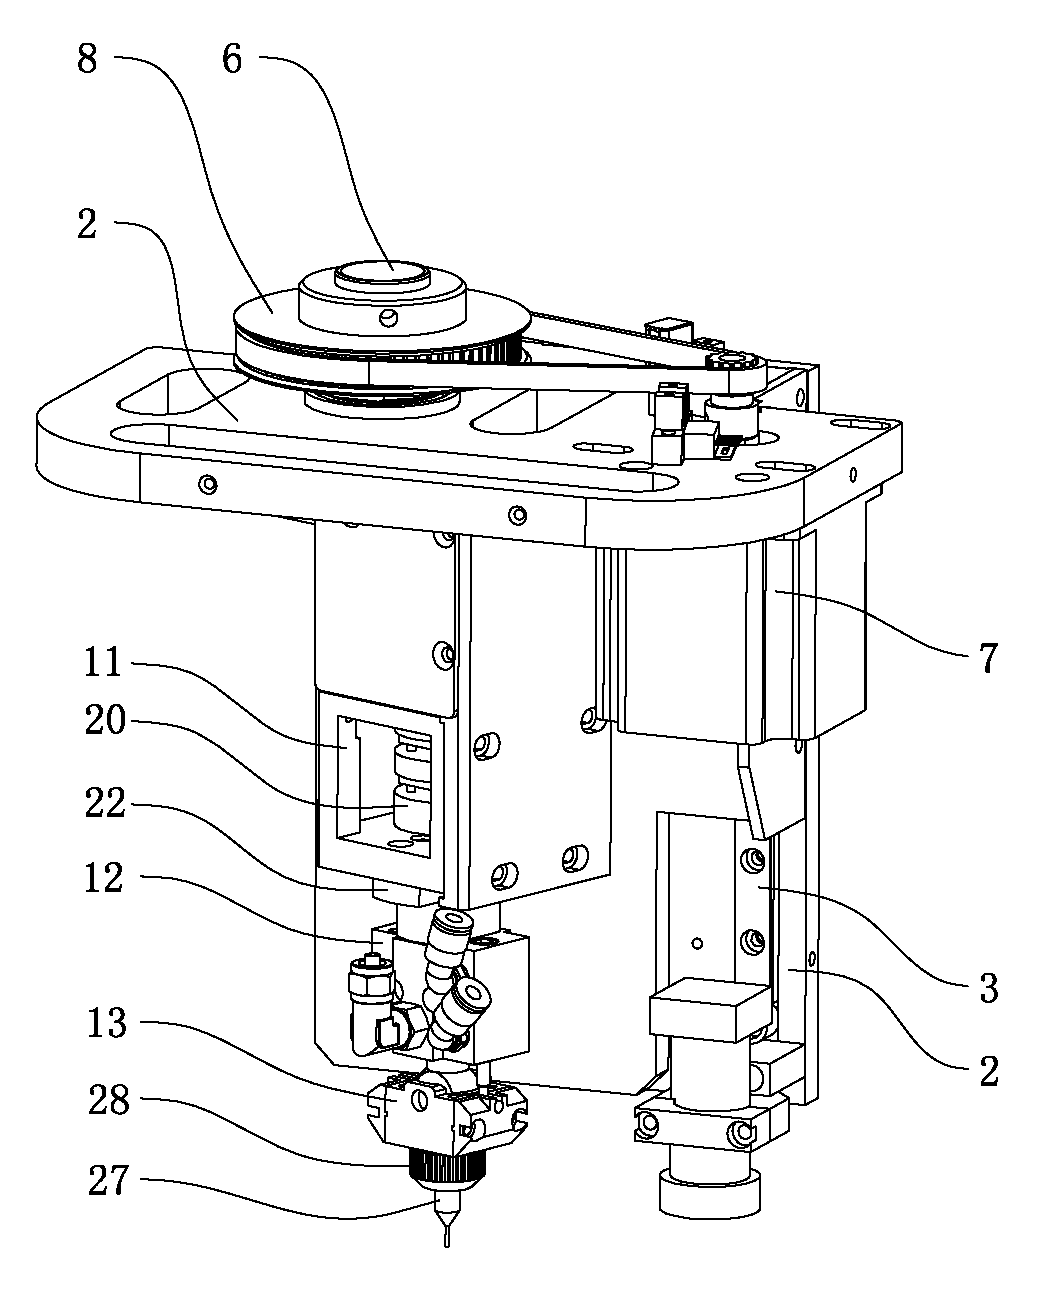 Head part mechanism of glue dispenser